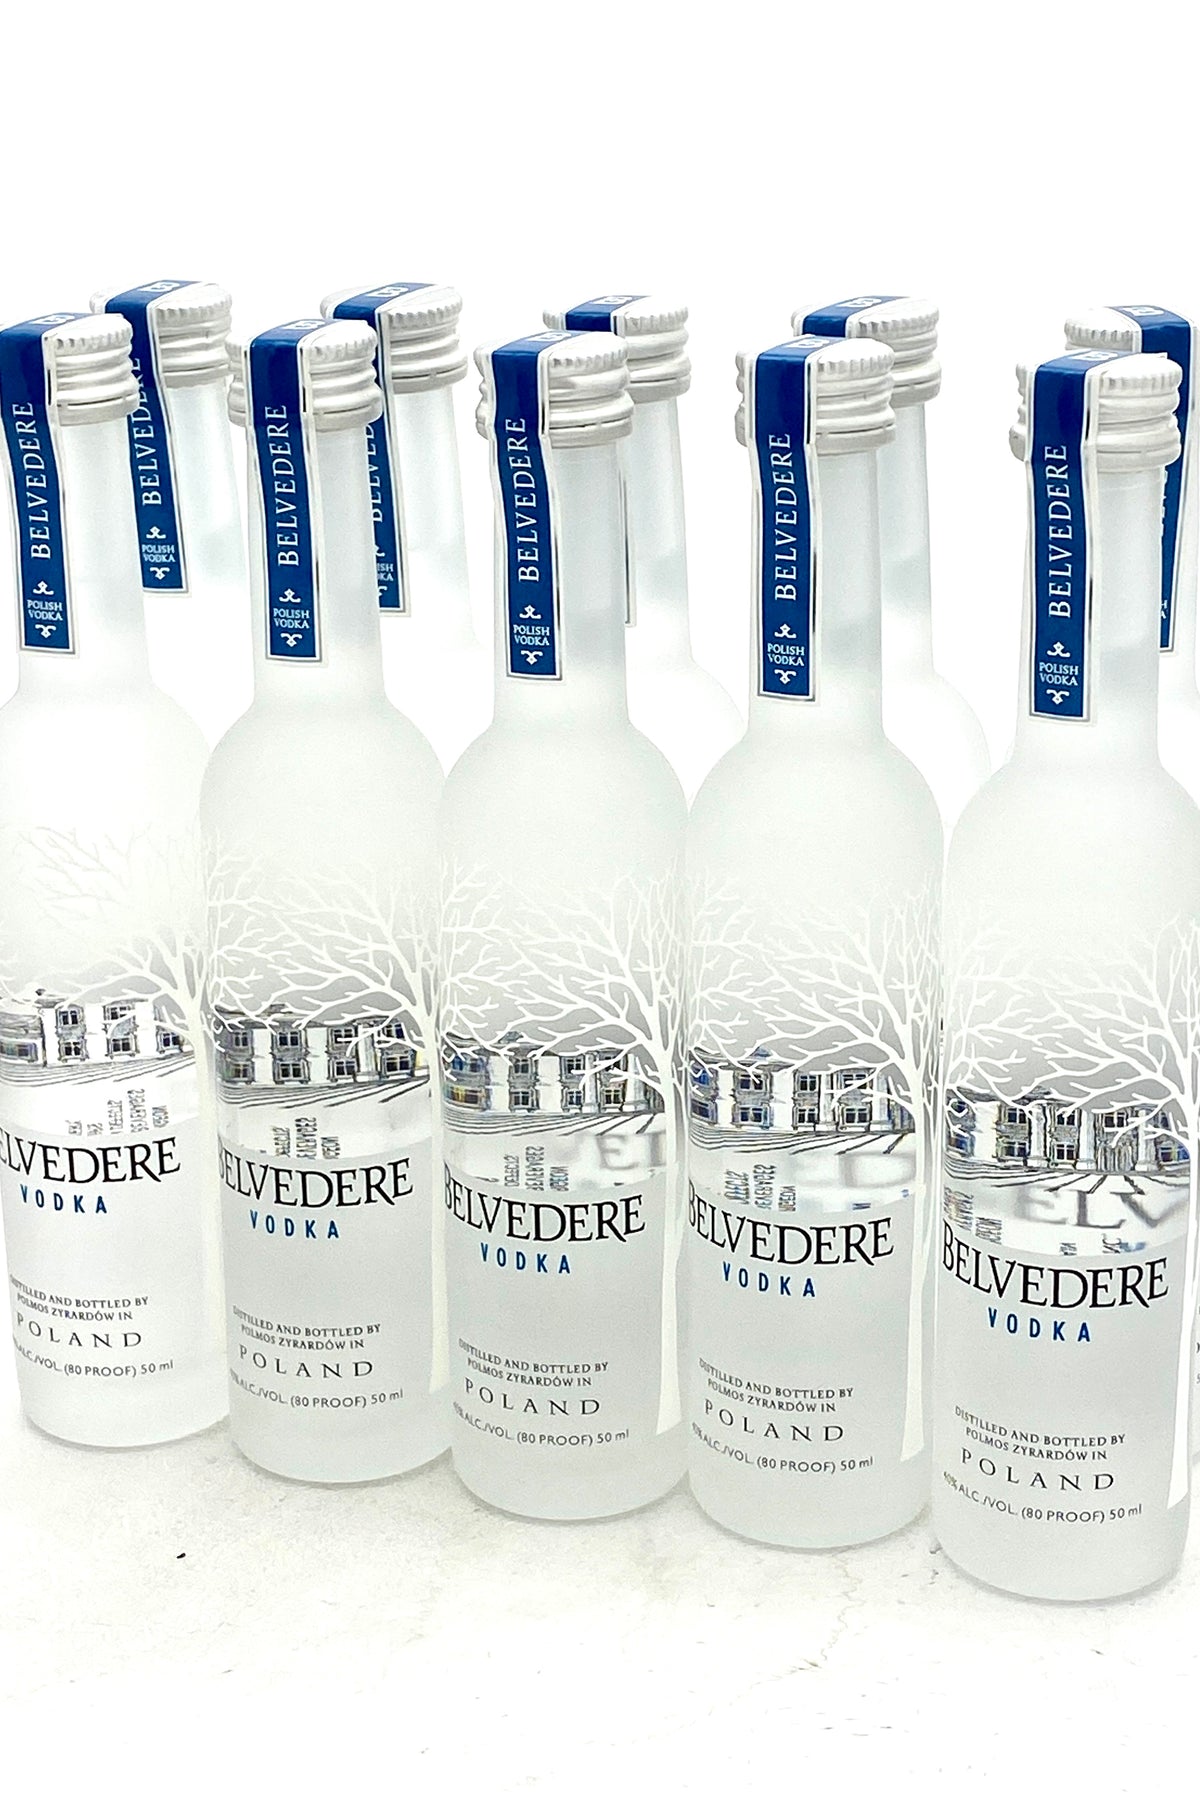 Belvedere Vodka 10 x 50 ml